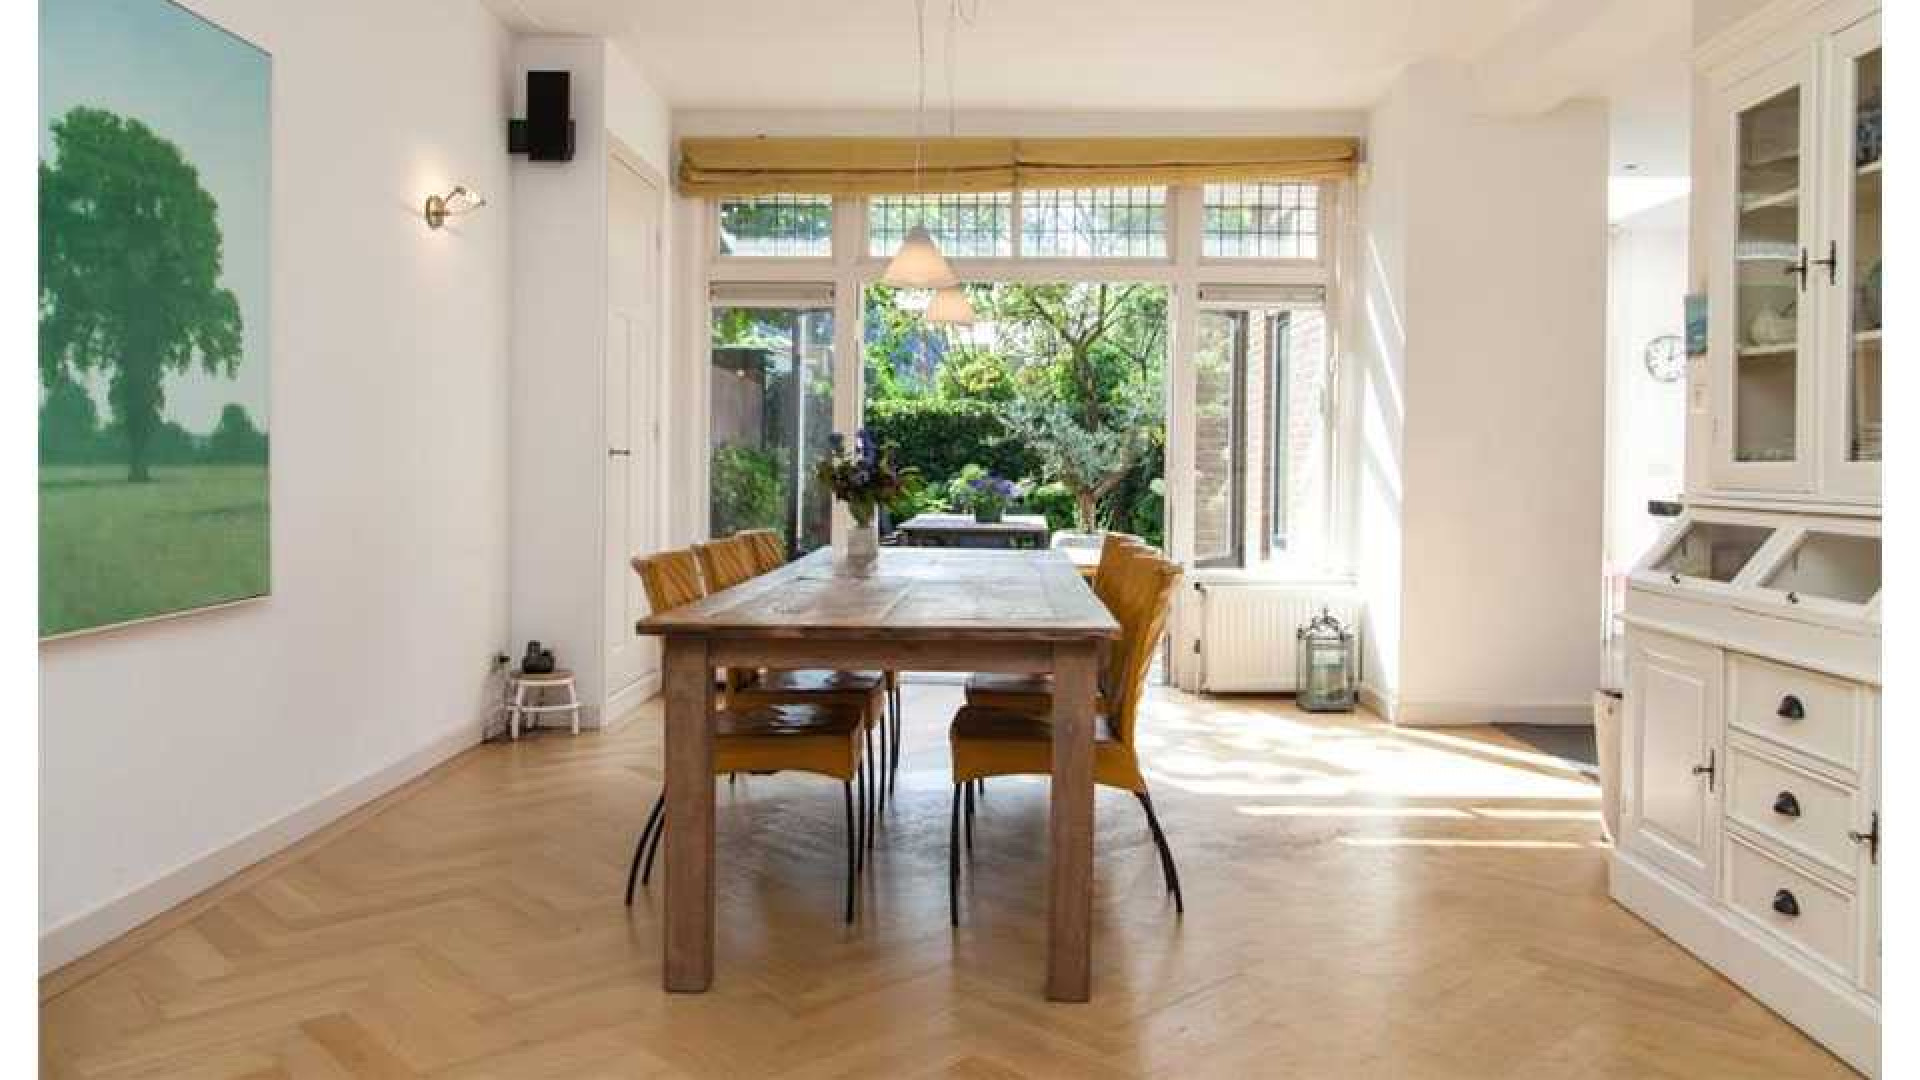 Alberto Stegeman koopt uit eigen zak voor bijna 1 miljoen villa in Heemstede. Zie foto's